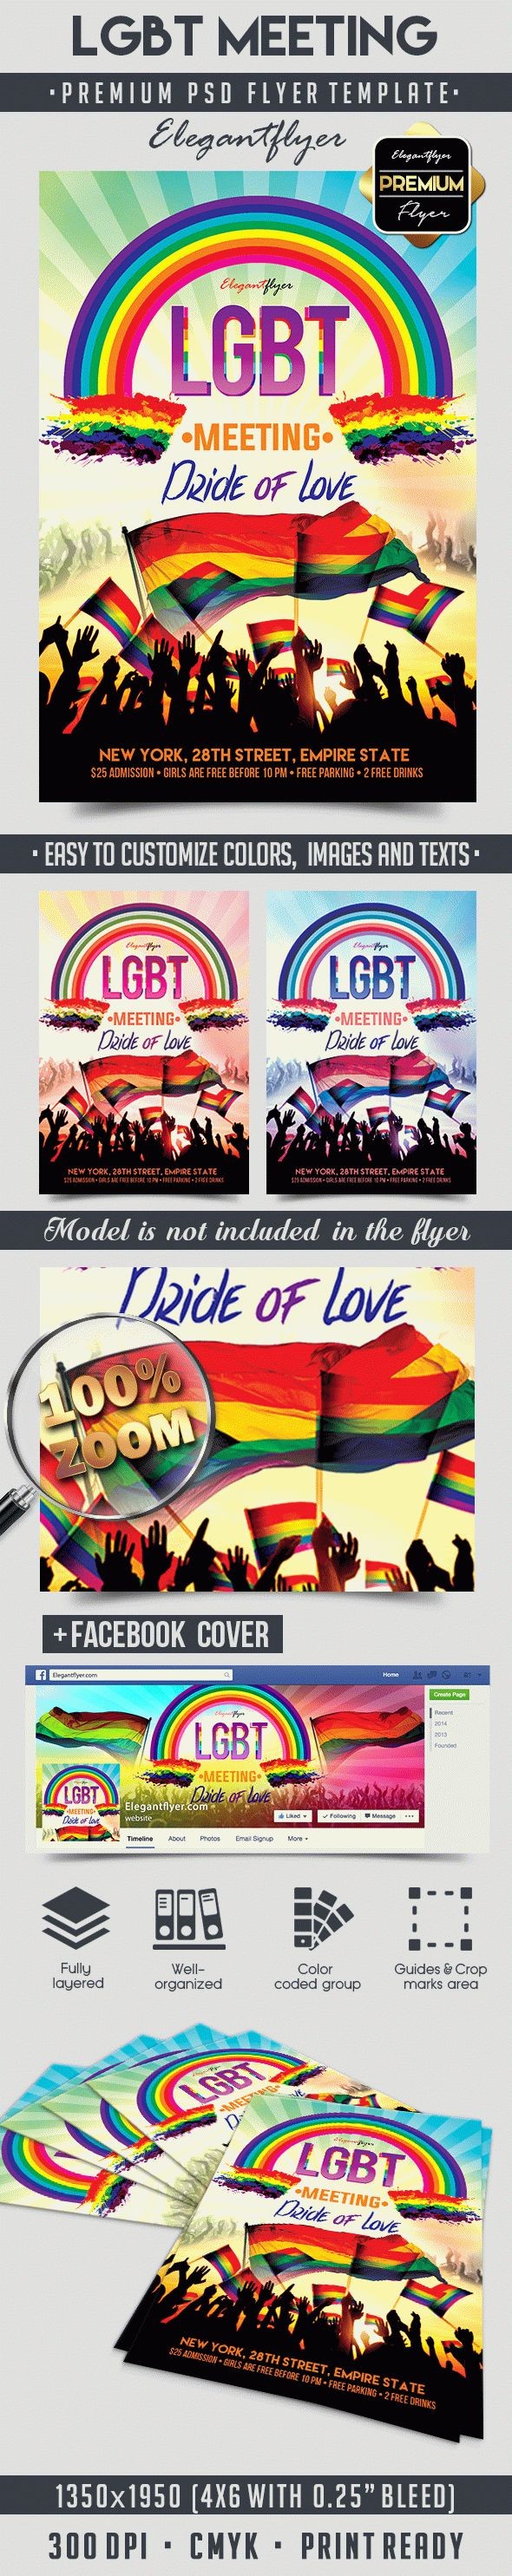 LGBT Meeting Flyer by ElegantFlyer